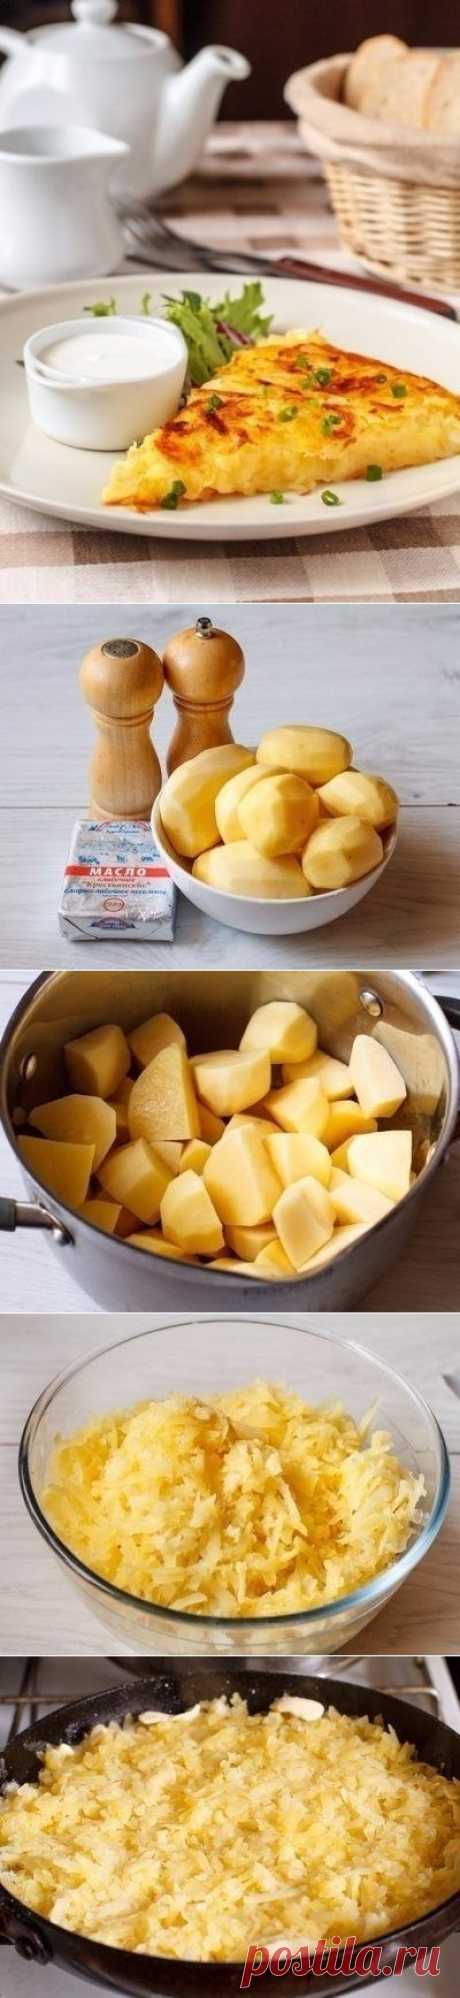 Как приготовить картофель рёшти - рецепт, ингридиенты и фотографии